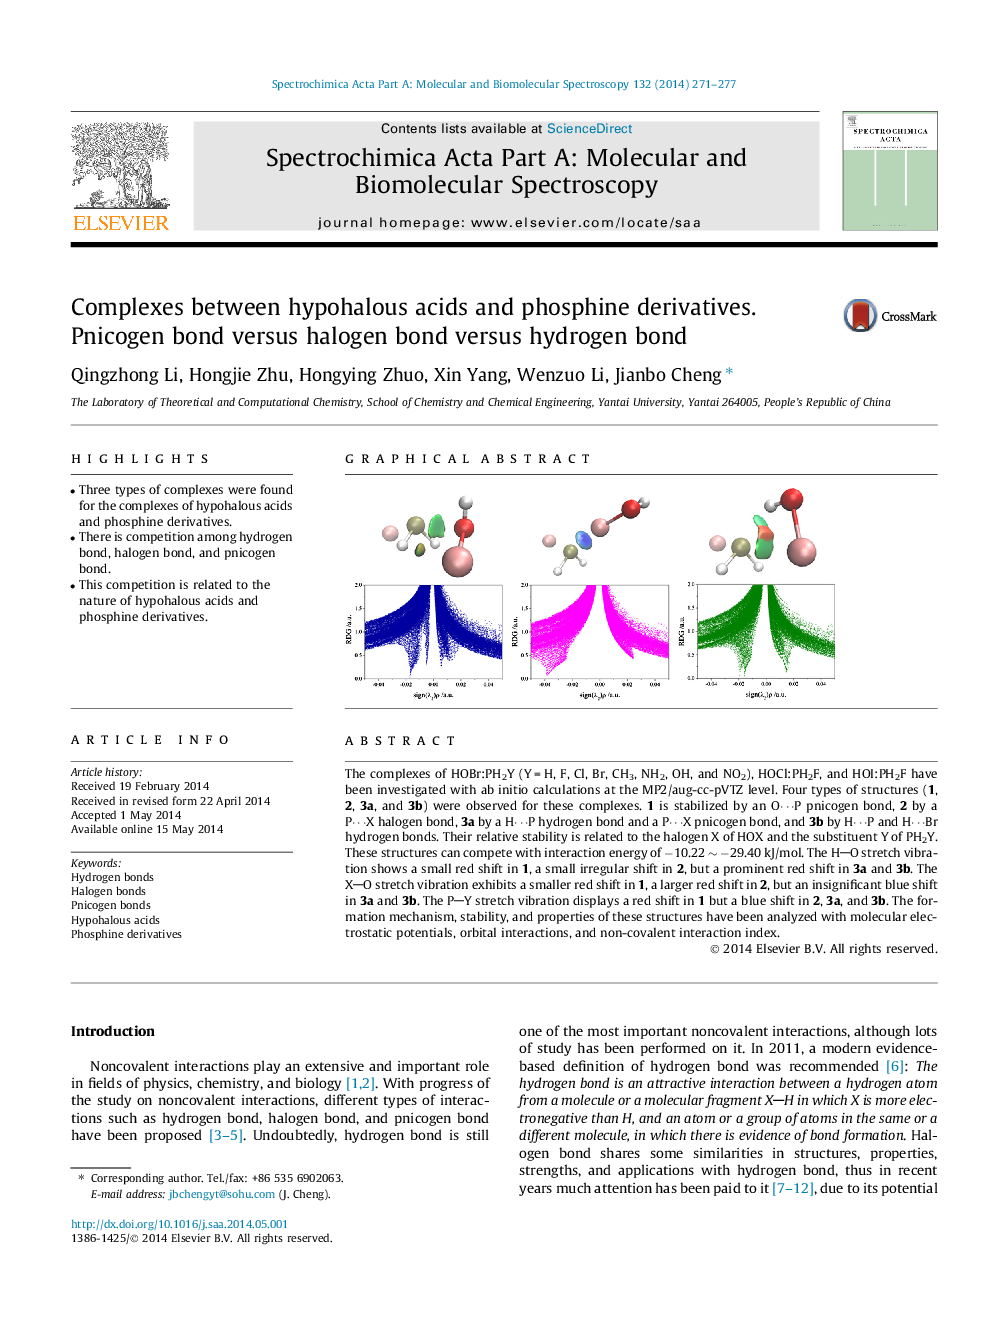 Complexes between hypohalous acids and phosphine derivatives. Pnicogen bond versus halogen bond versus hydrogen bond